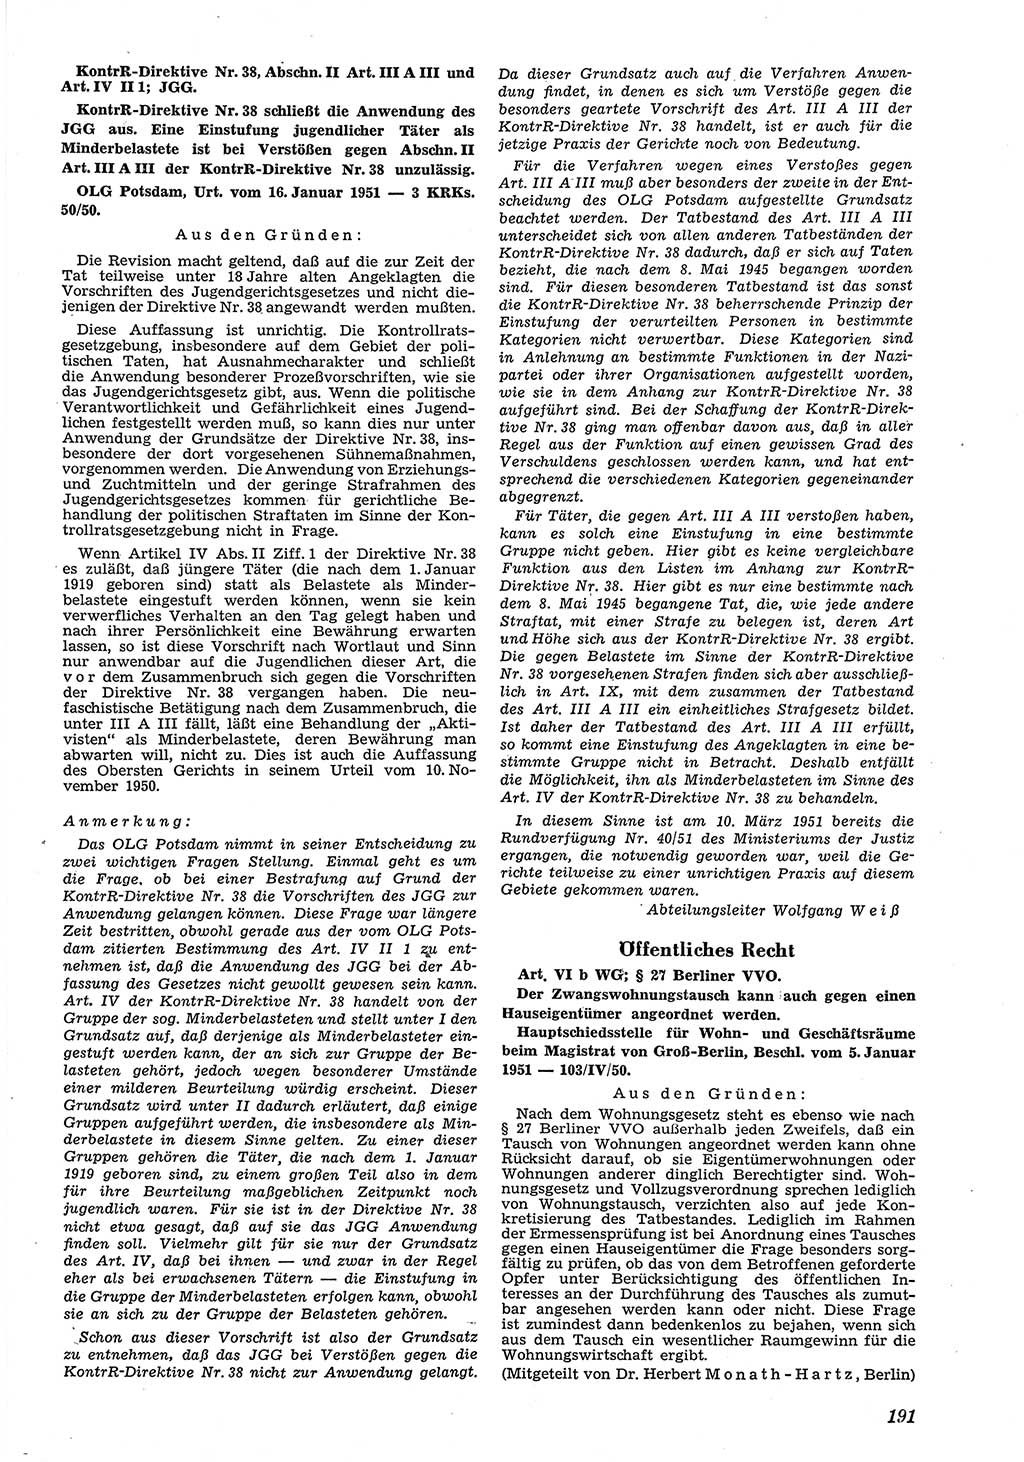 Neue Justiz (NJ), Zeitschrift für Recht und Rechtswissenschaft [Deutsche Demokratische Republik (DDR)], 5. Jahrgang 1951, Seite 191 (NJ DDR 1951, S. 191)